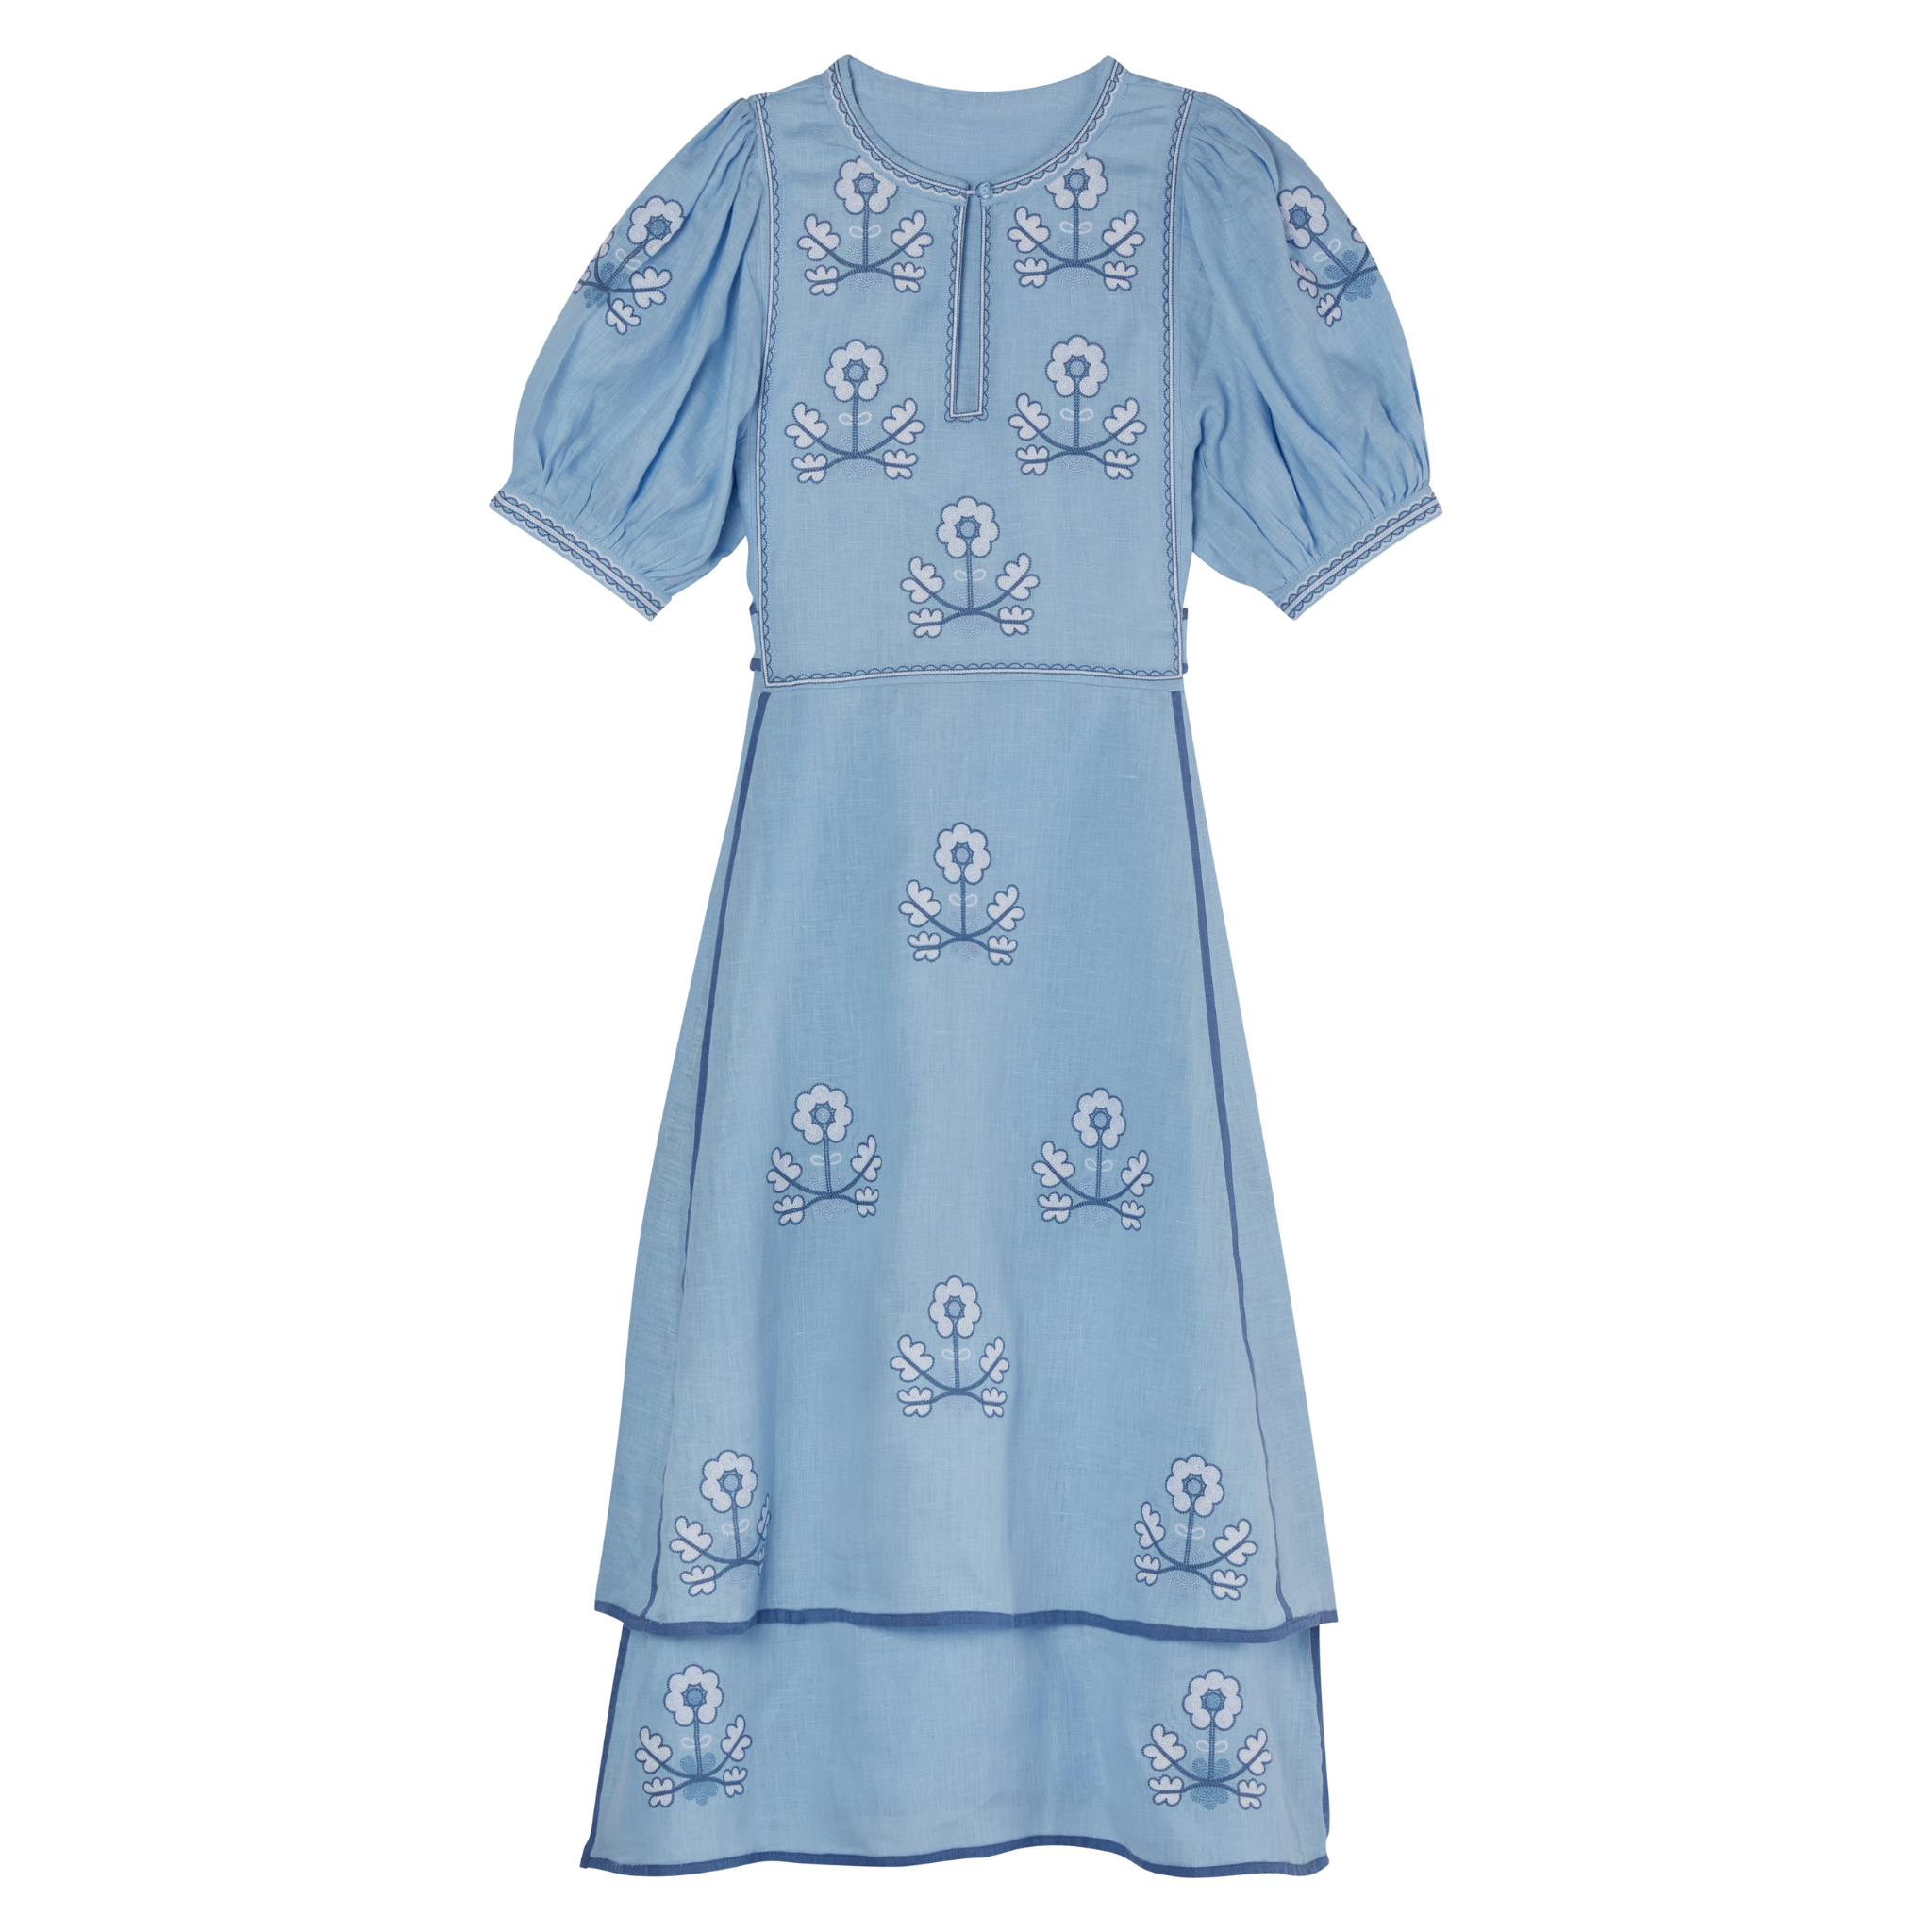 Lillie Ukrainian Embroidered Dress - Light Blue, White by Larkin Lane